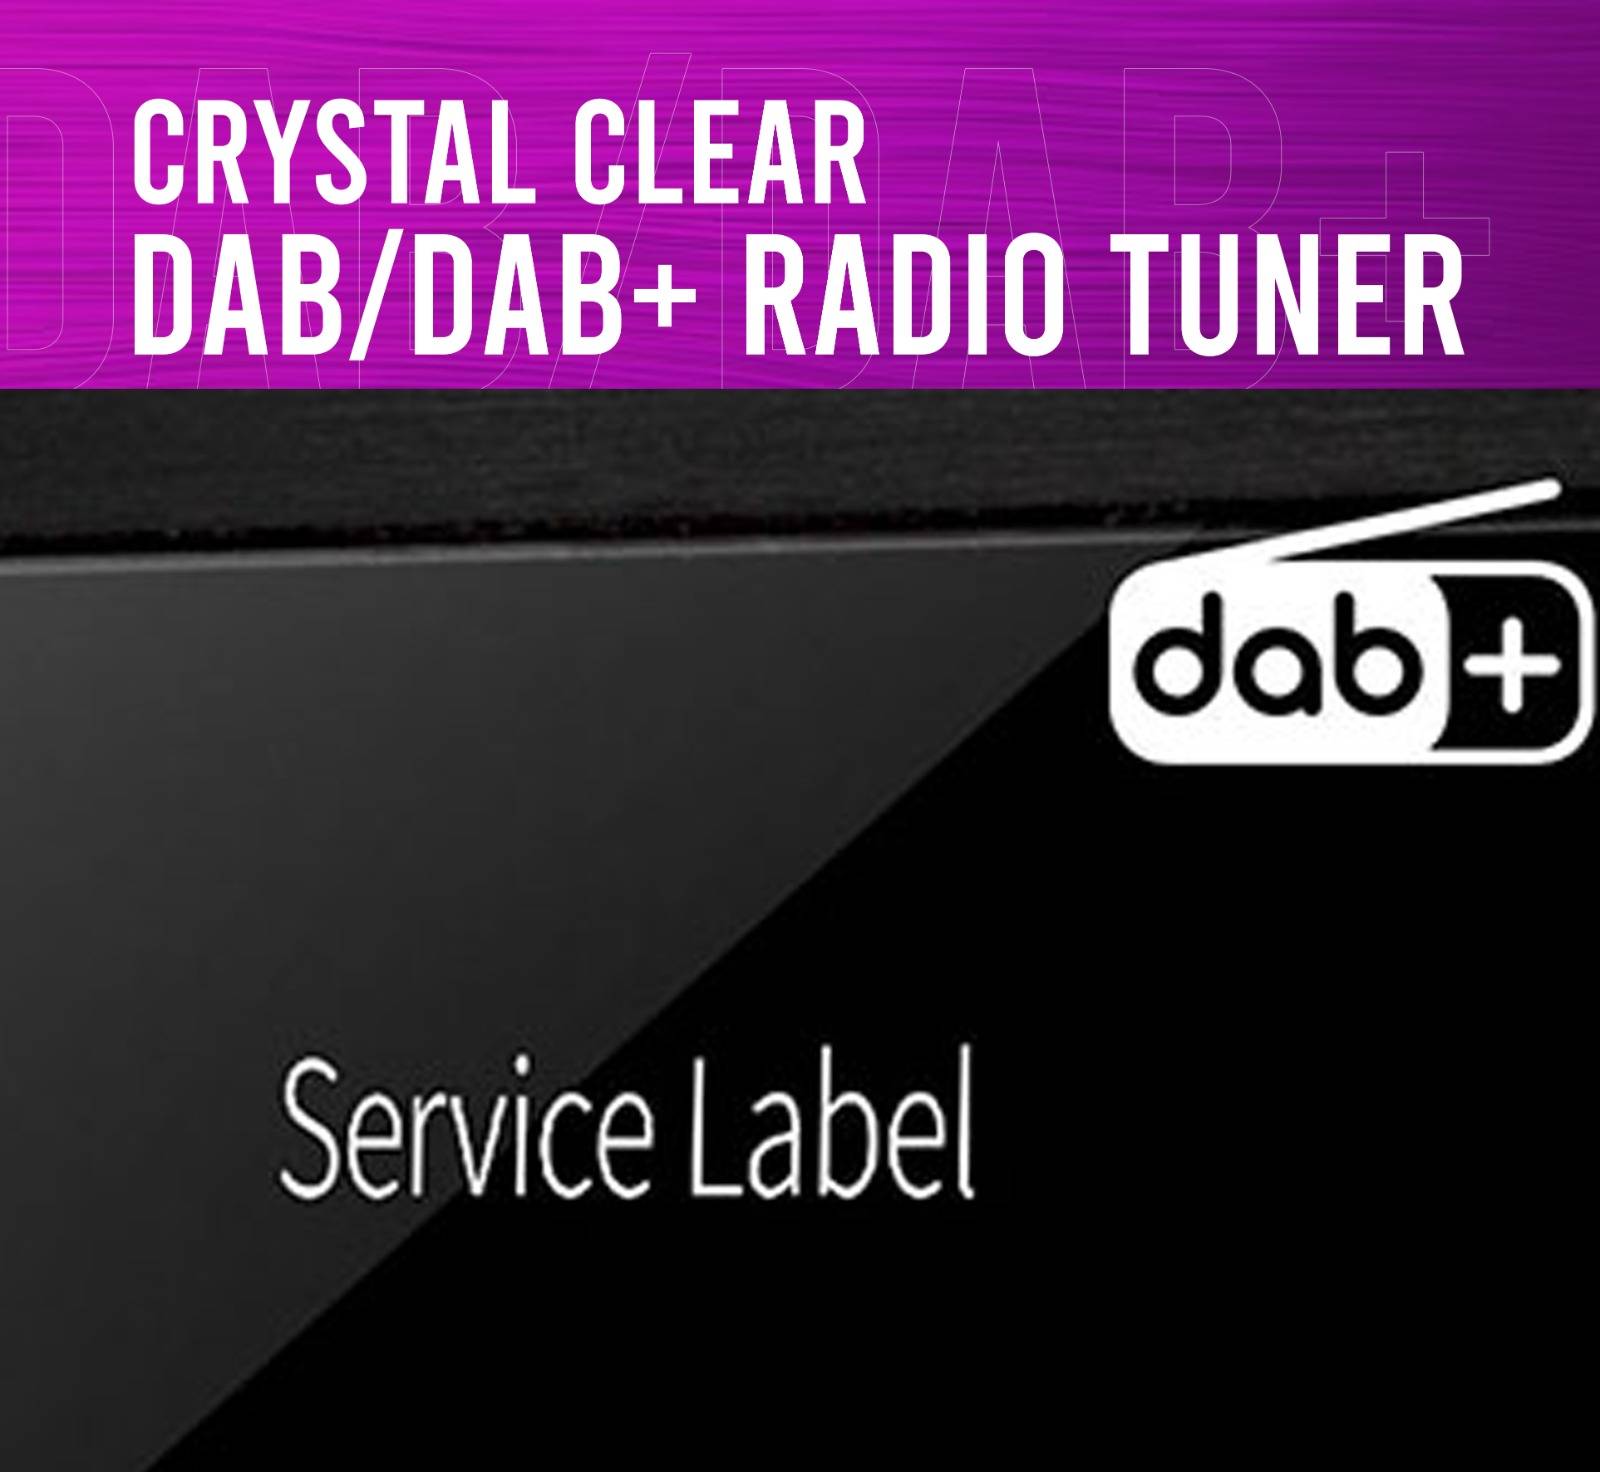 Crystal Clear DAB/DAB+ Radio Tuner